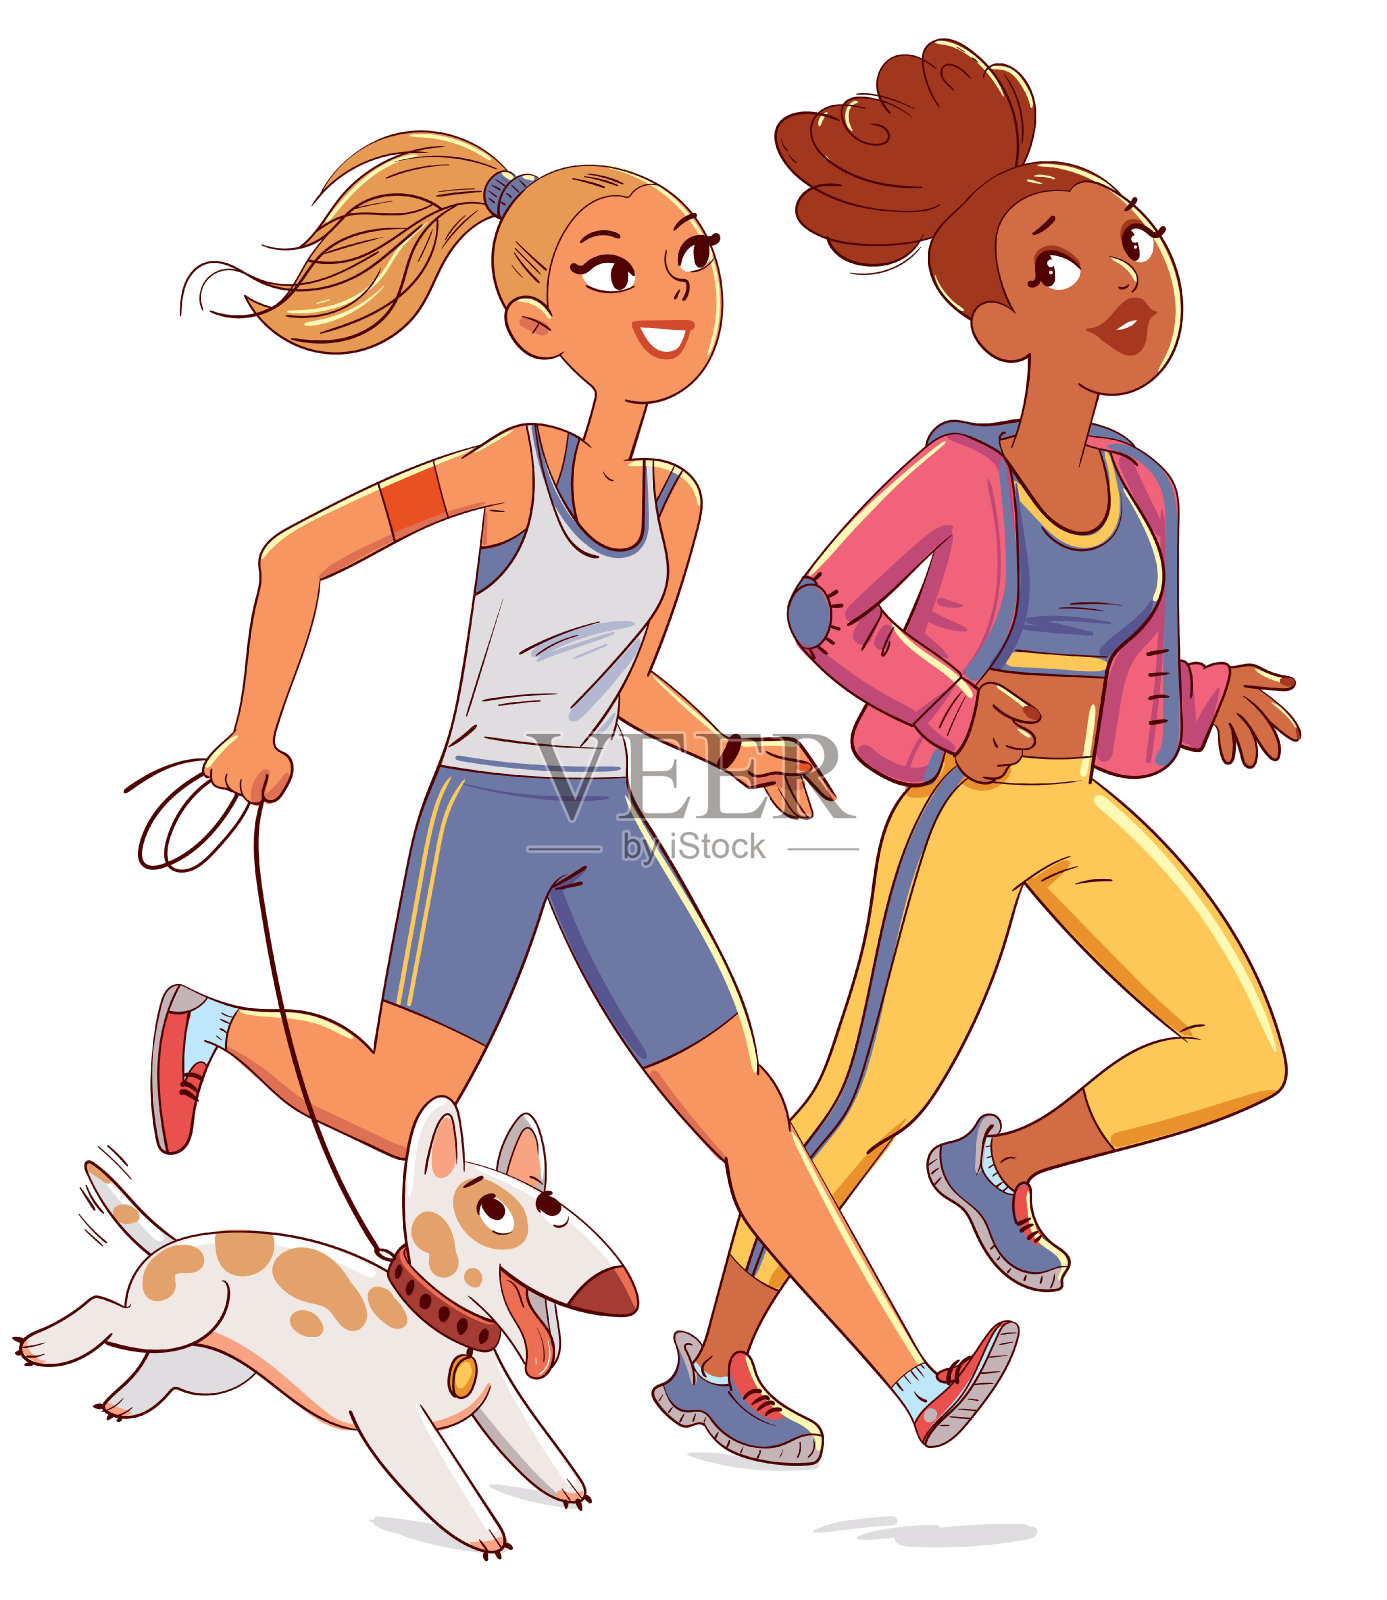 两个女孩带着狗慢跑。有趣的卡通人物插画图片素材